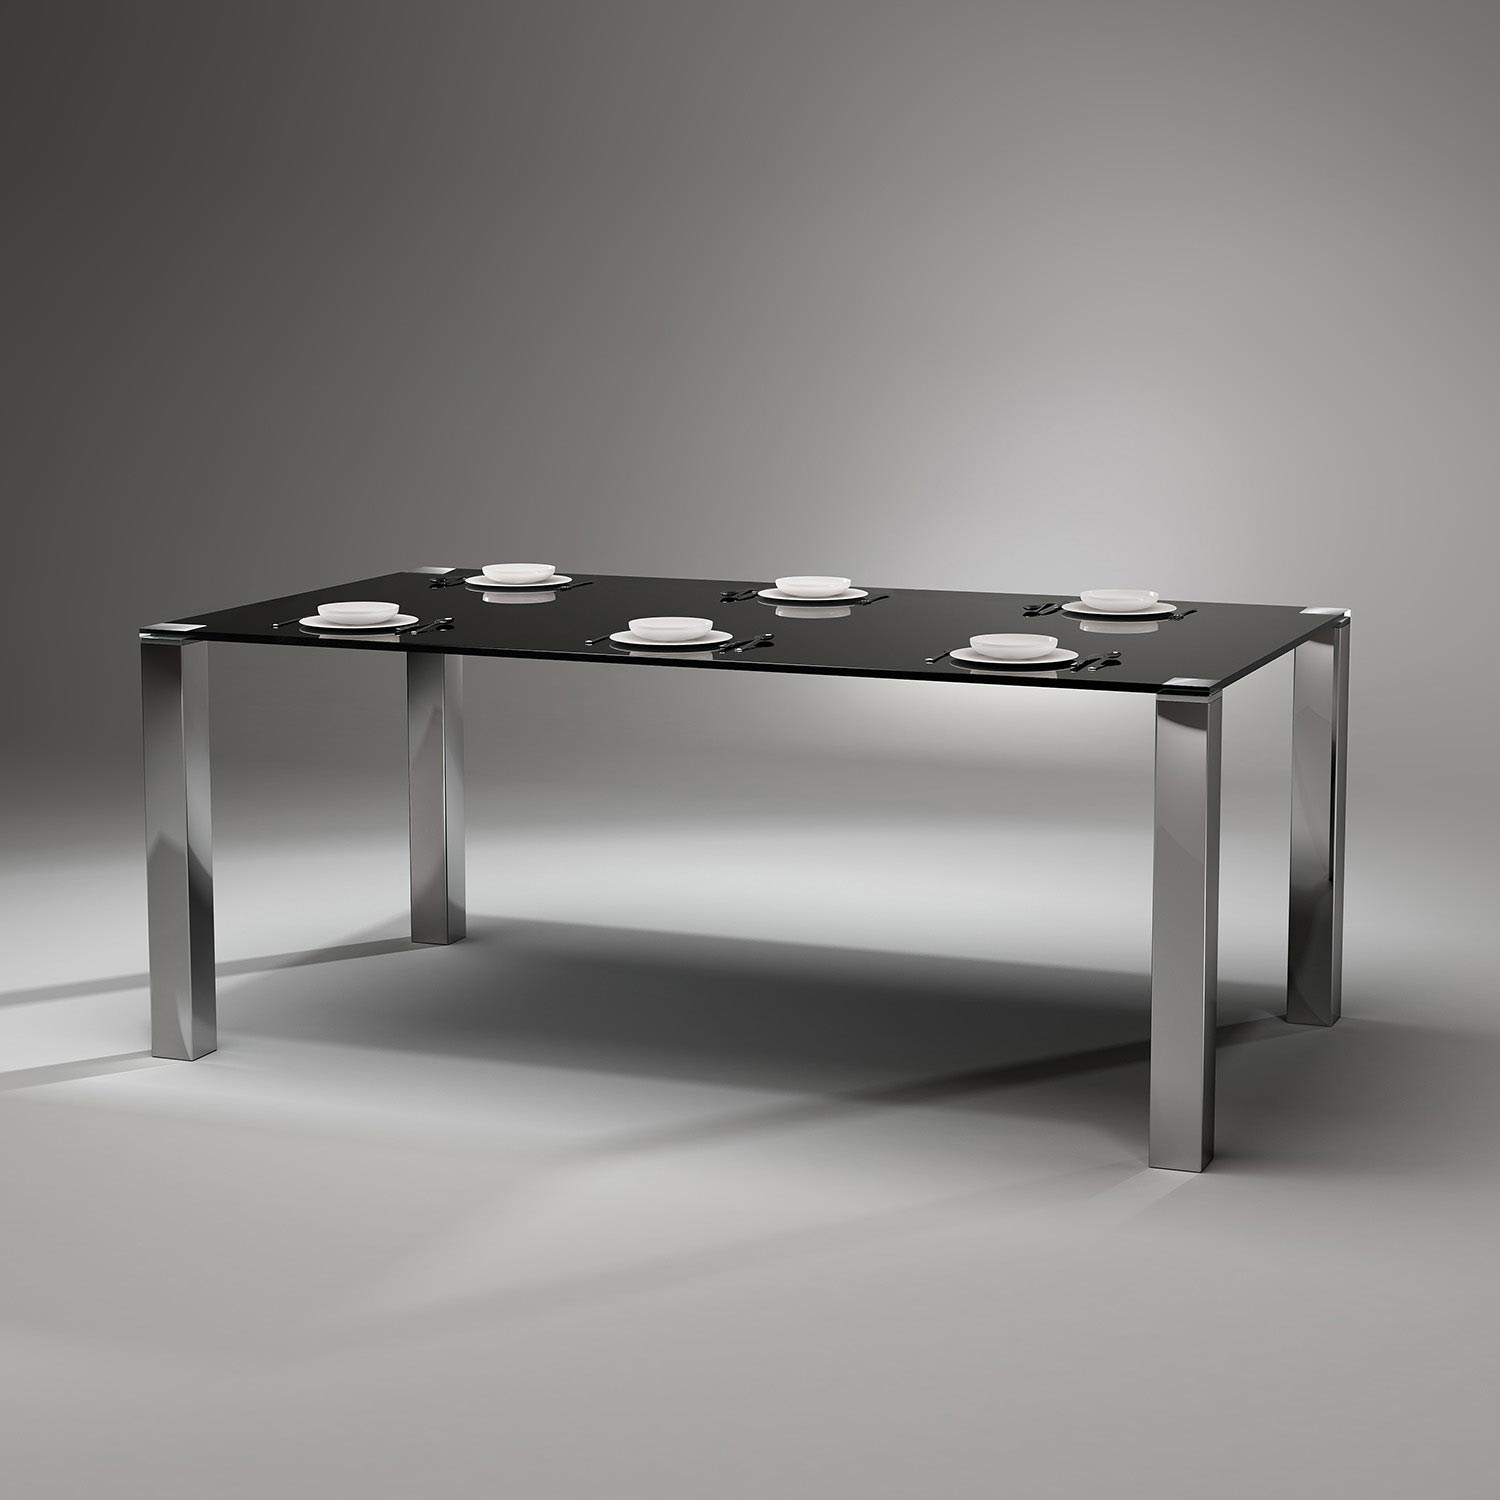 Moderner Glastisch QUADRO MAGNUM von DREIECK DESIGN: QM 2072 - FLOATGLAS color tiefschwarz - Tischfüße Edelstahl handpoliert